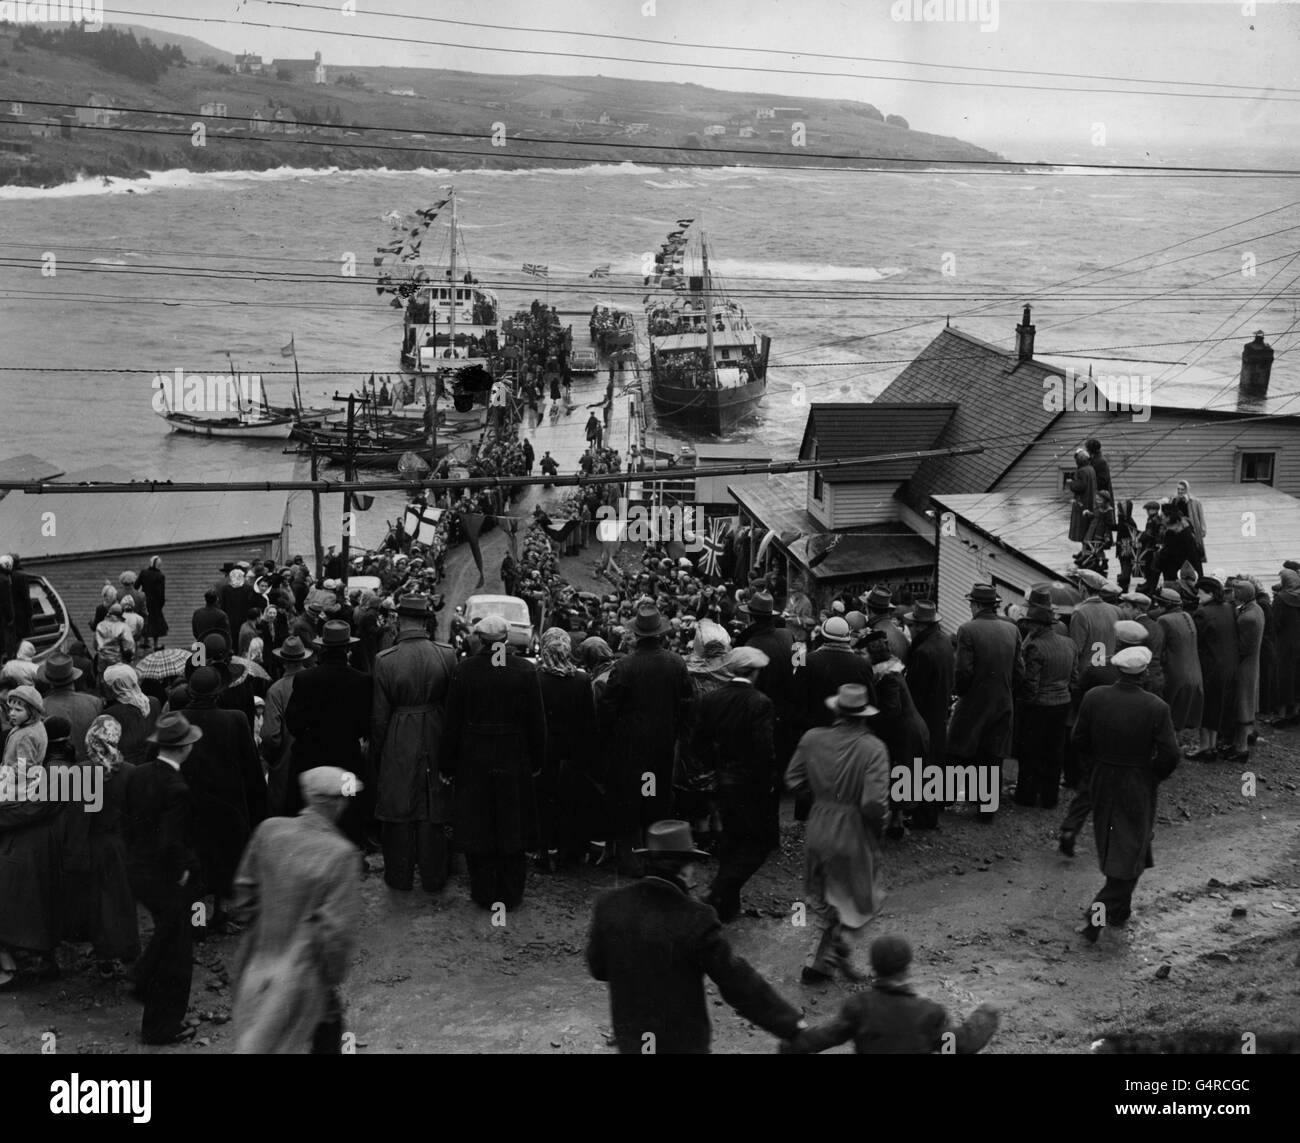 À Portugal Cove, Terre-Neuve, les vagues ont atteint 12 pieds de hauteur lorsque le couple royal est monté à bord du ferry pour les emmener à leur paquebot pour le voyage de retour à la Grande-Bretagne, RMS Empress of Scotland. Banque D'Images